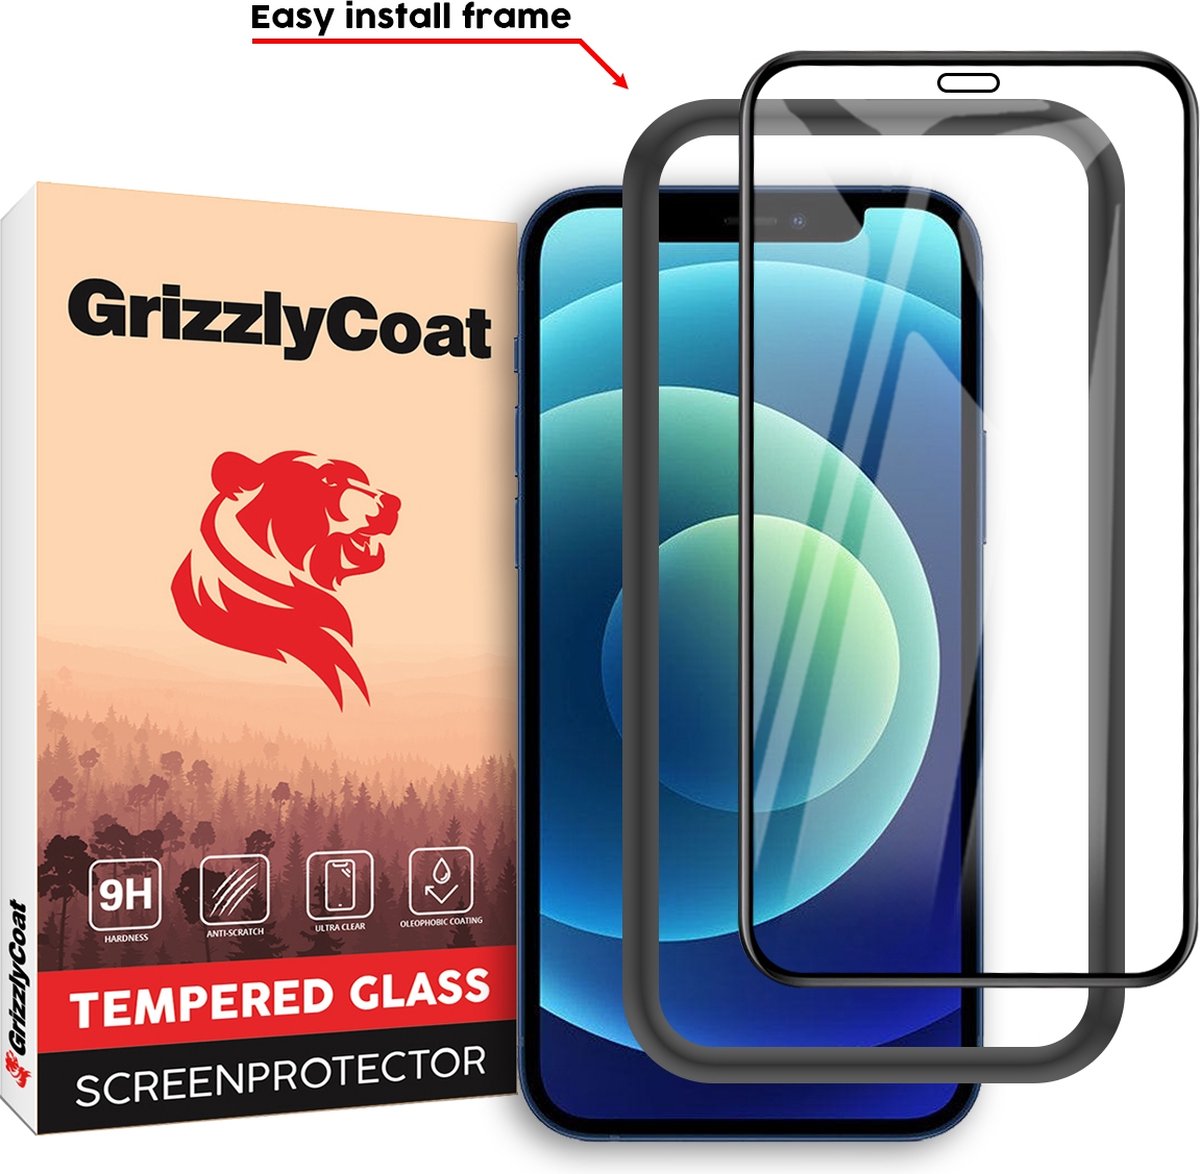 GrizzlyCoat - Screenprotector geschikt voor Apple iPhone 12 Glazen | GrizzlyCoat Easy Fit Screenprotector - Case Friendly + Installatie Frame - Zwart